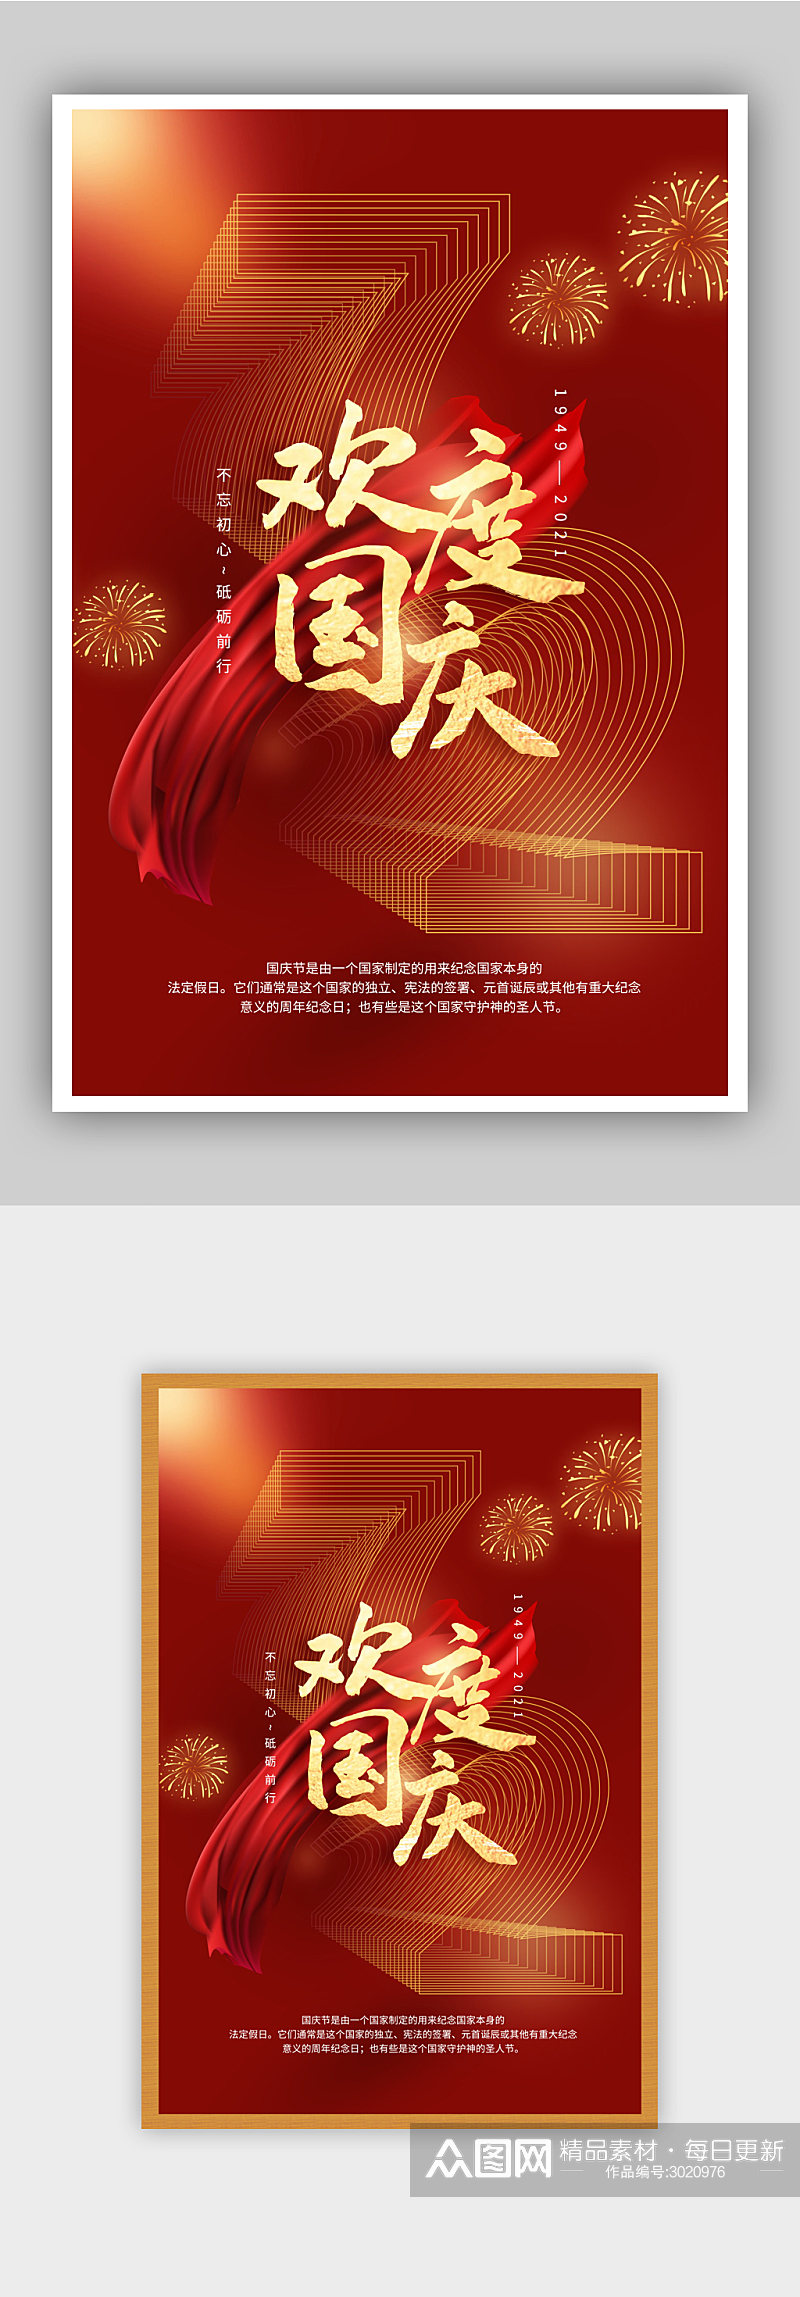 国庆节72周年海报素材